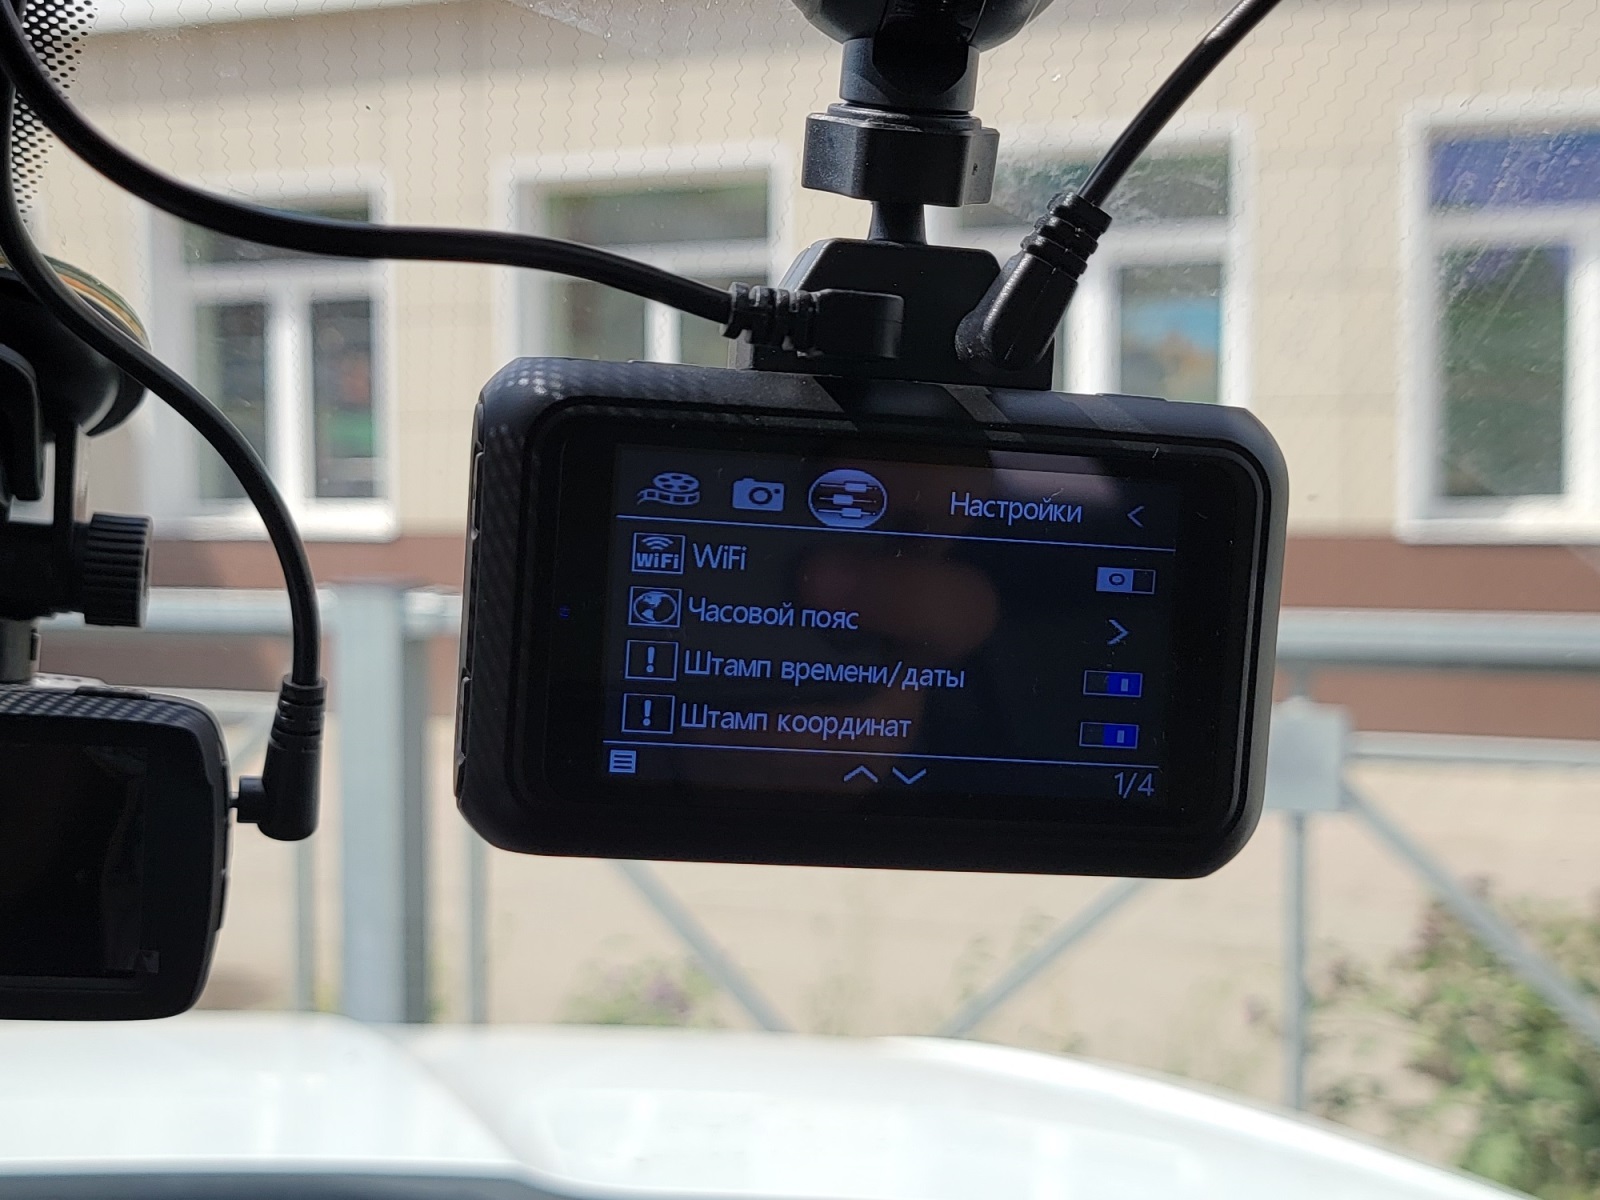 Фотокамера с GPS модулем. Разбор КАРКАМ гибрид сигнатур. Ремонт КАРКАМ гибрид сигнатур. Hybrid signature evo wi